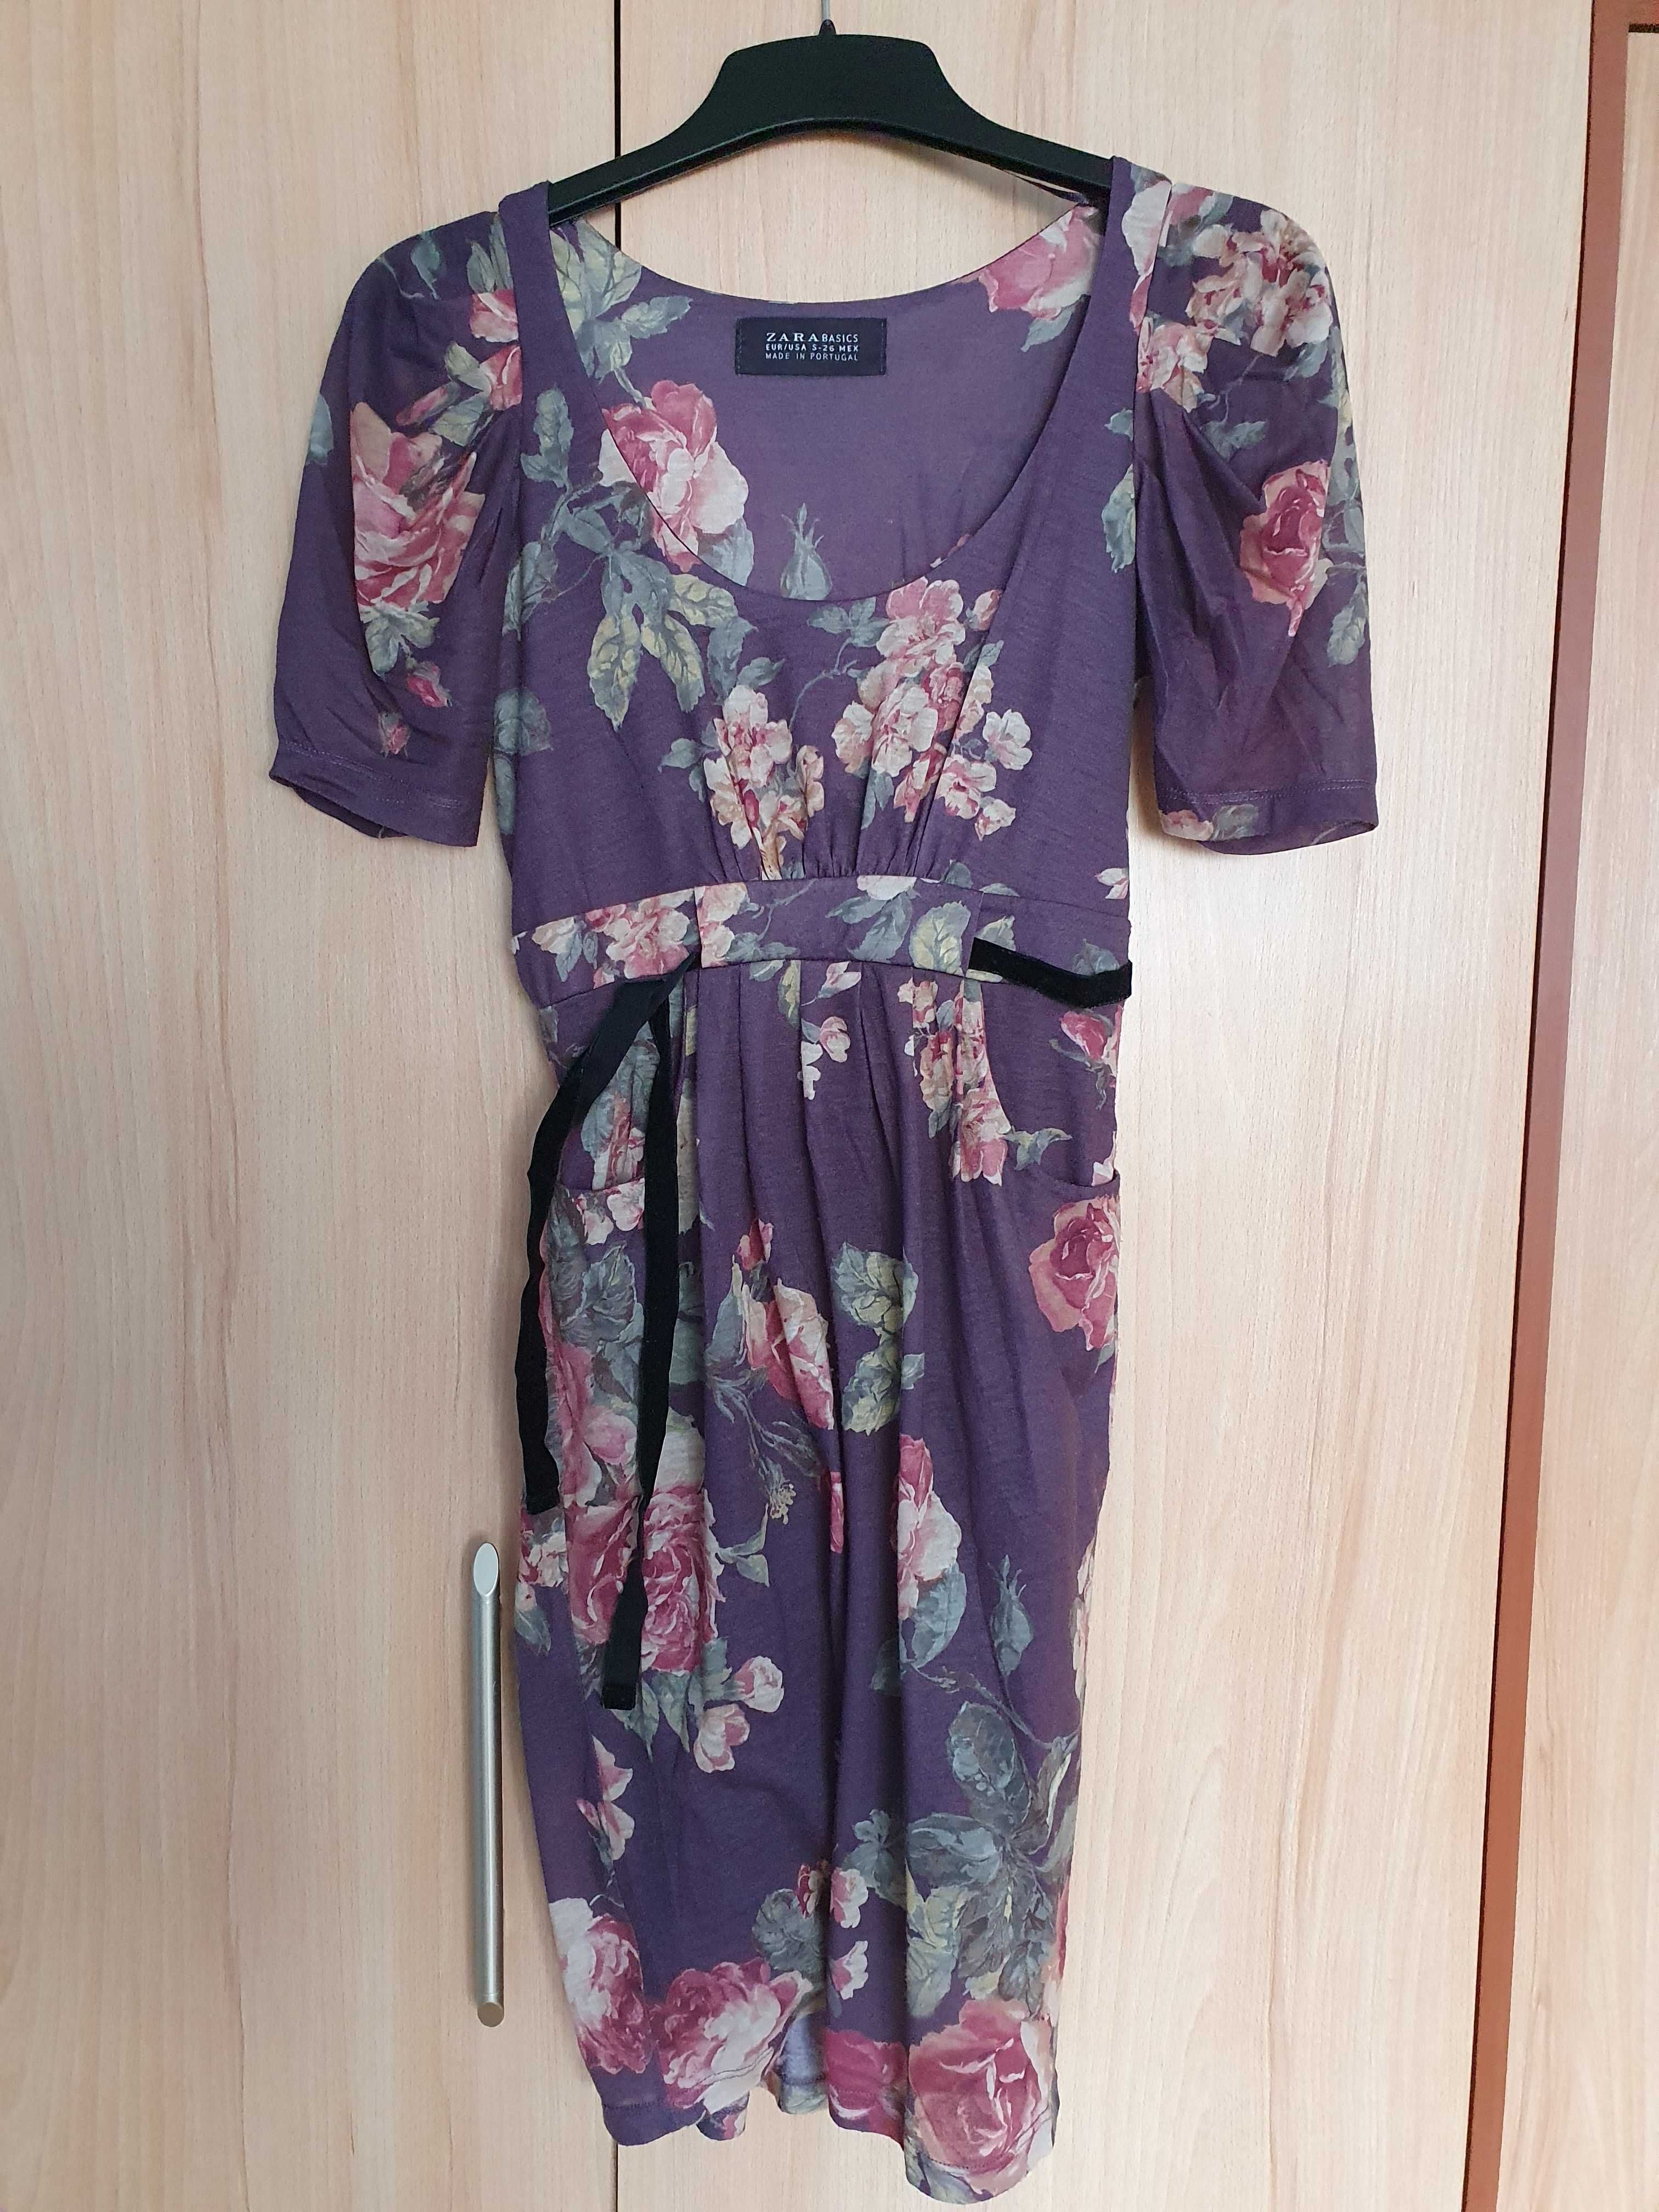 Fioletowa sukienka w kwiaty, Zara